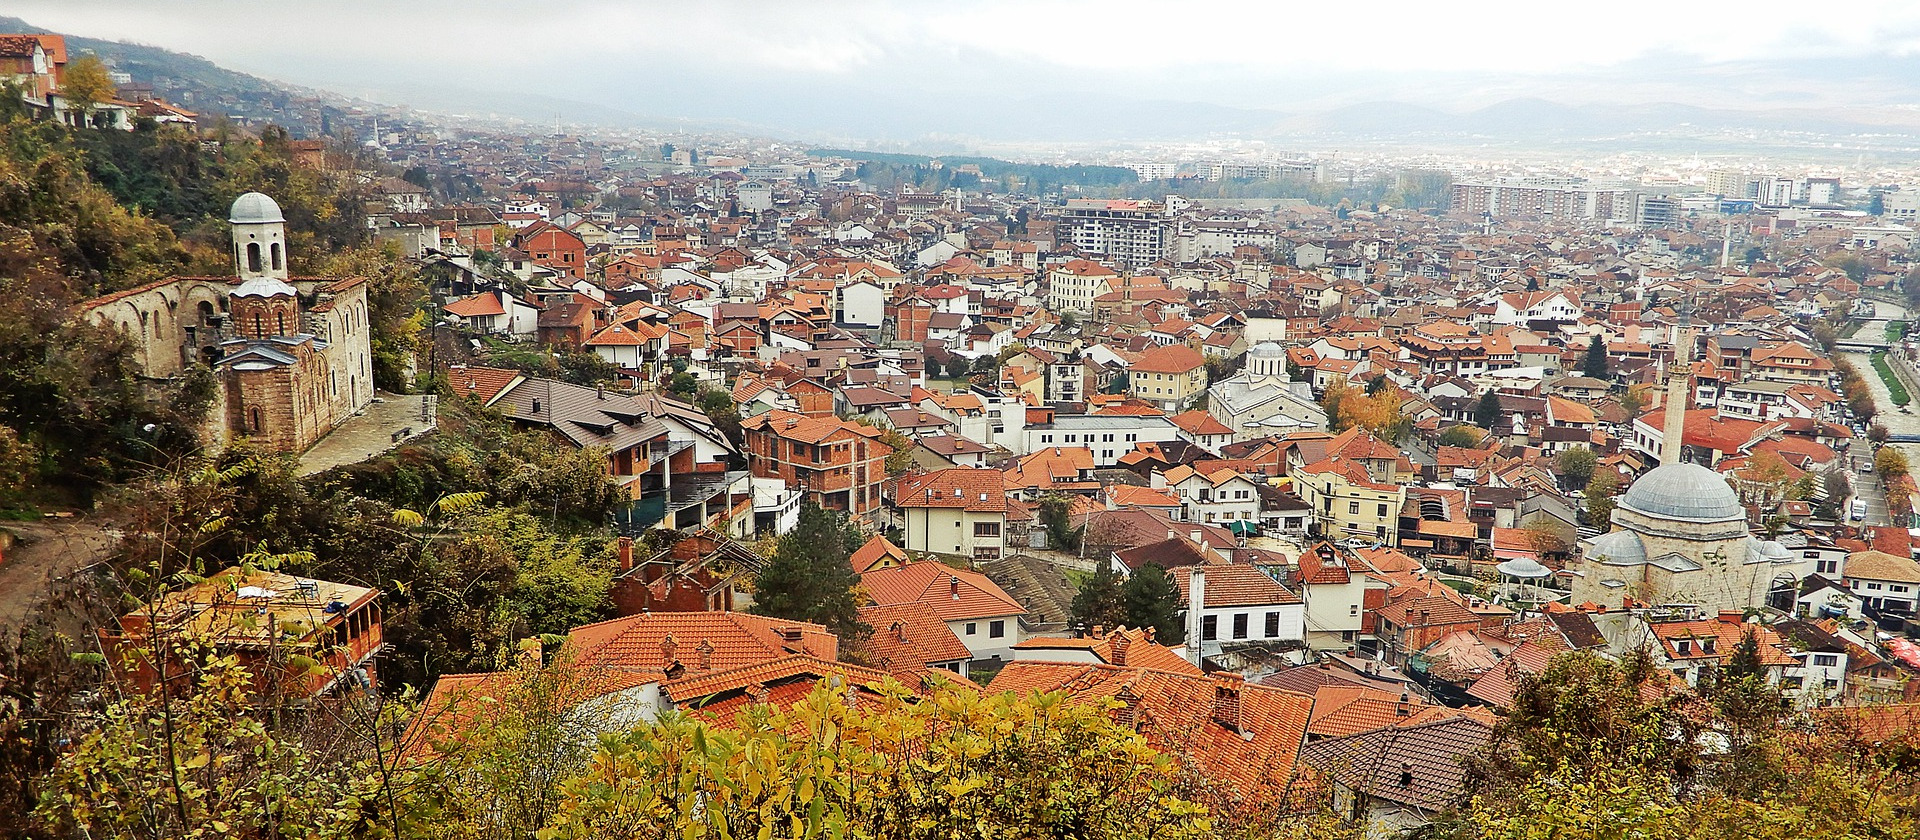 Skyline of Prizren, Kosovo.